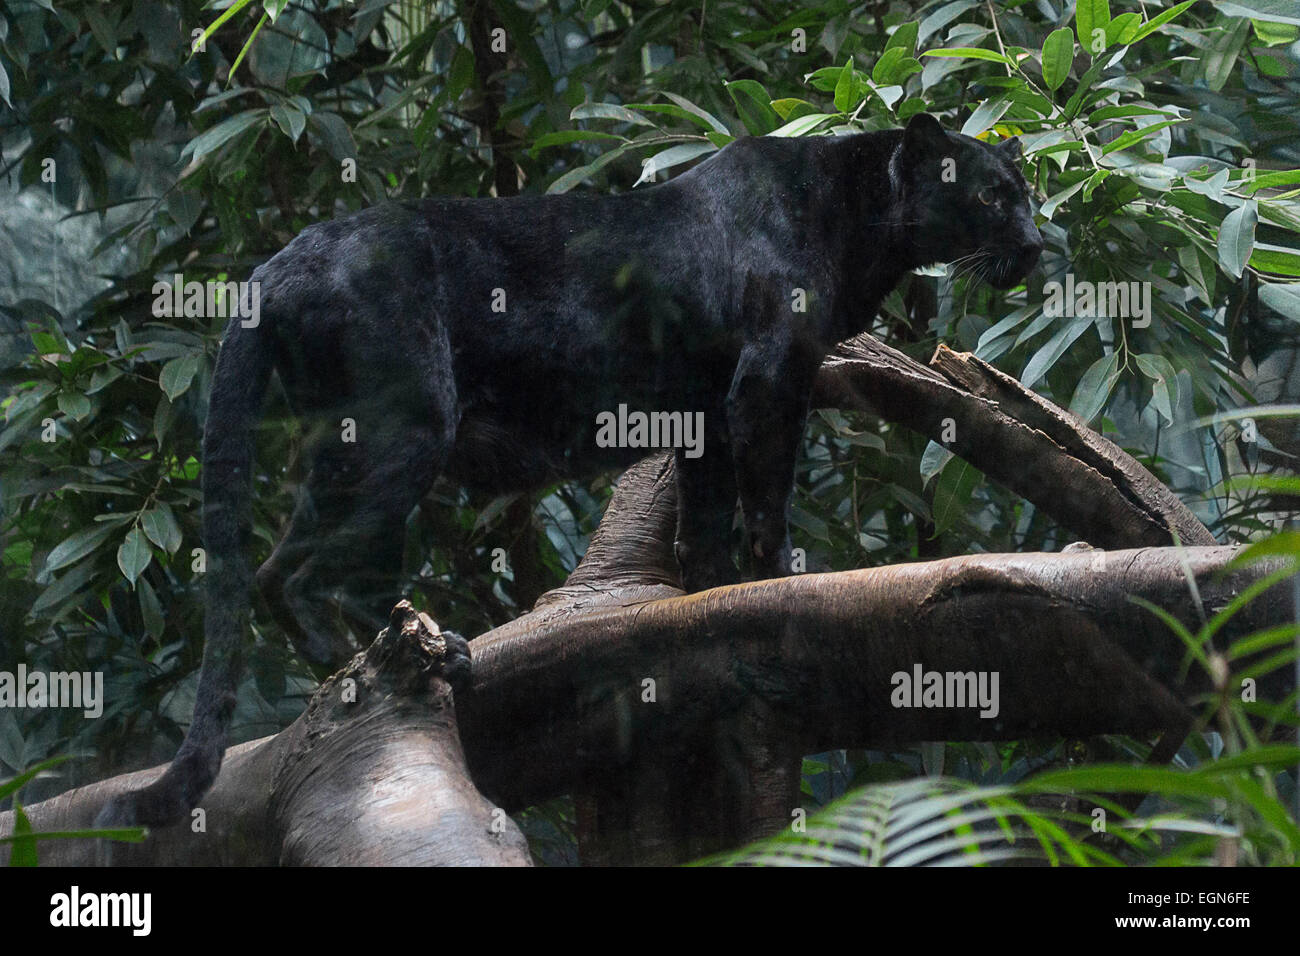 Wohl eines der am schwersten von den Großkatzen, steht dieses schöne Black Panther auf einem Baumstamm für das Foto Stockfoto